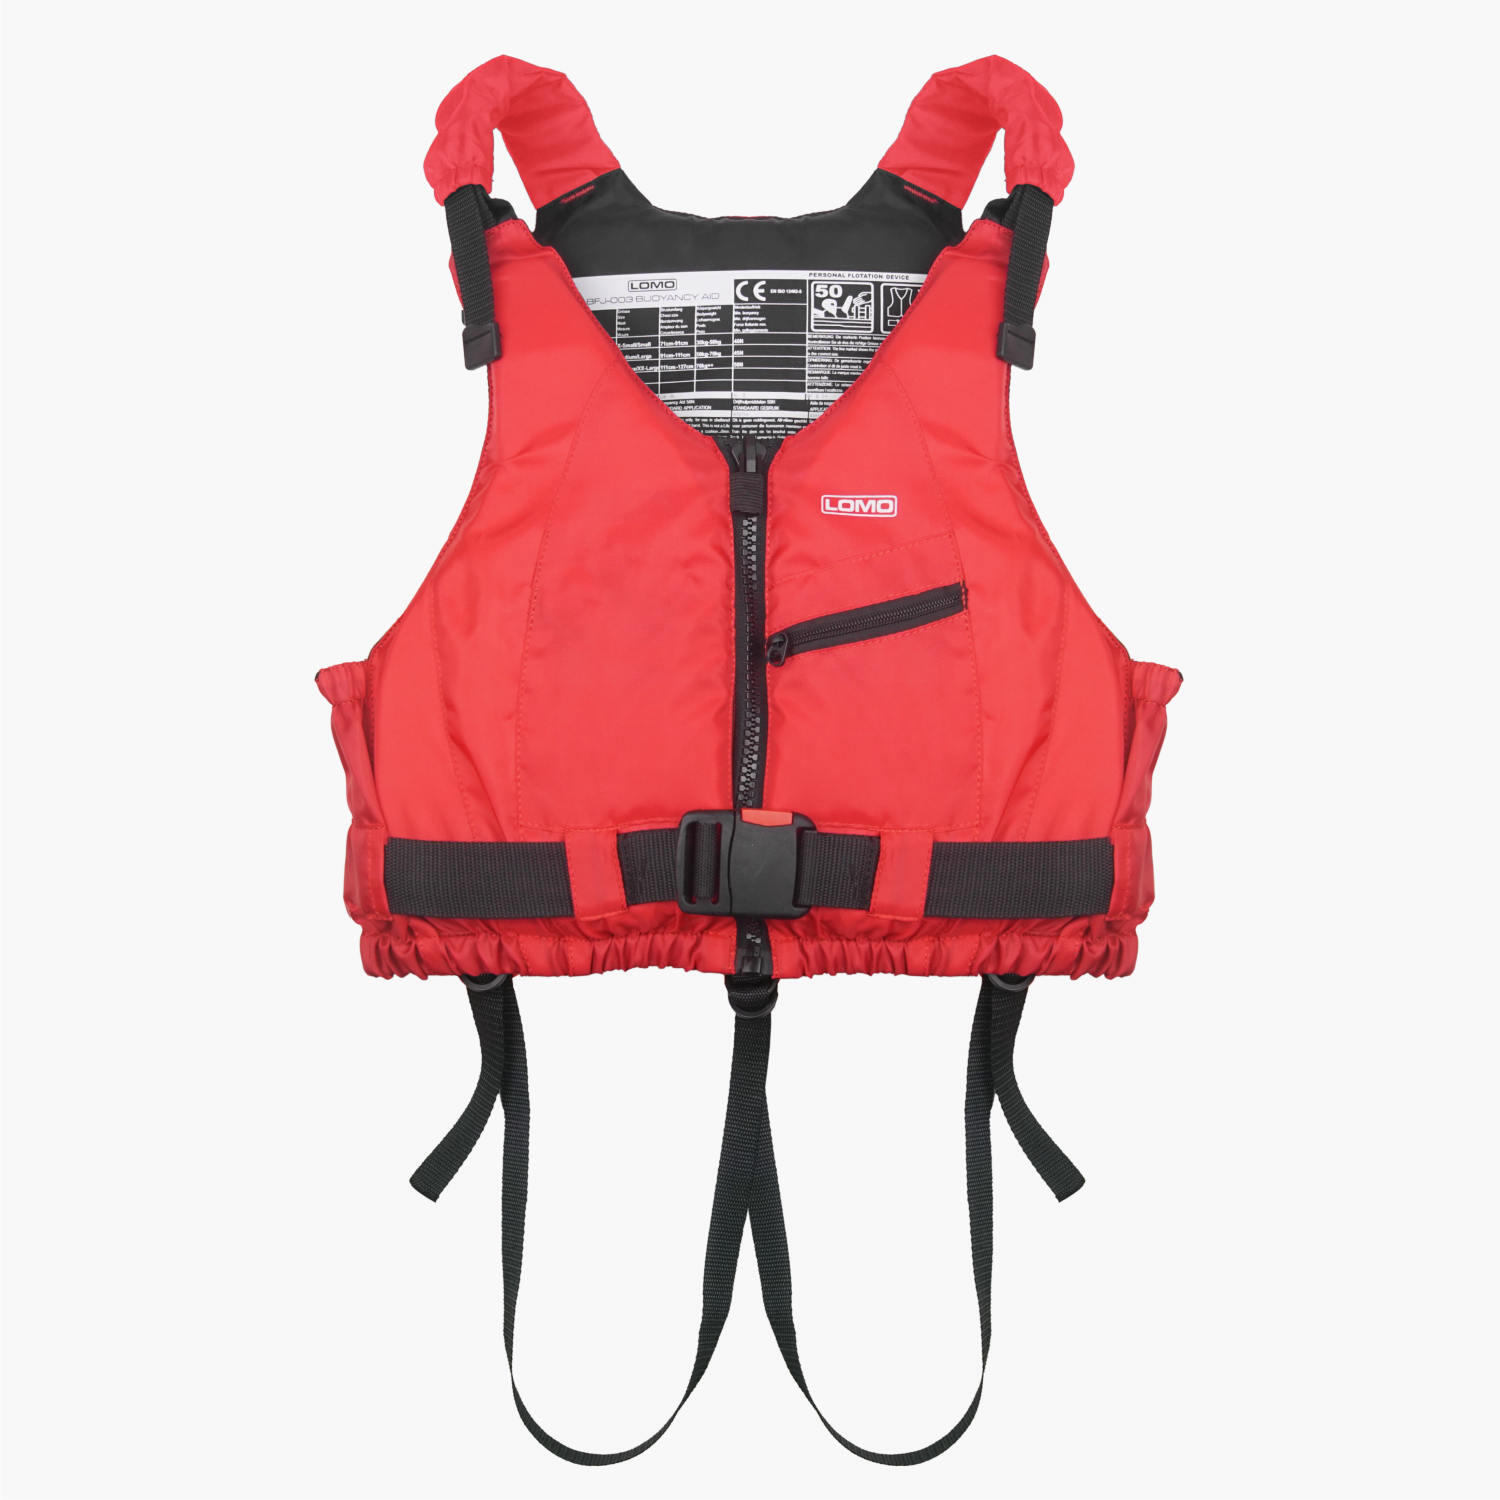 Kayak Buoyancy Aids - Life Jackets & Vests